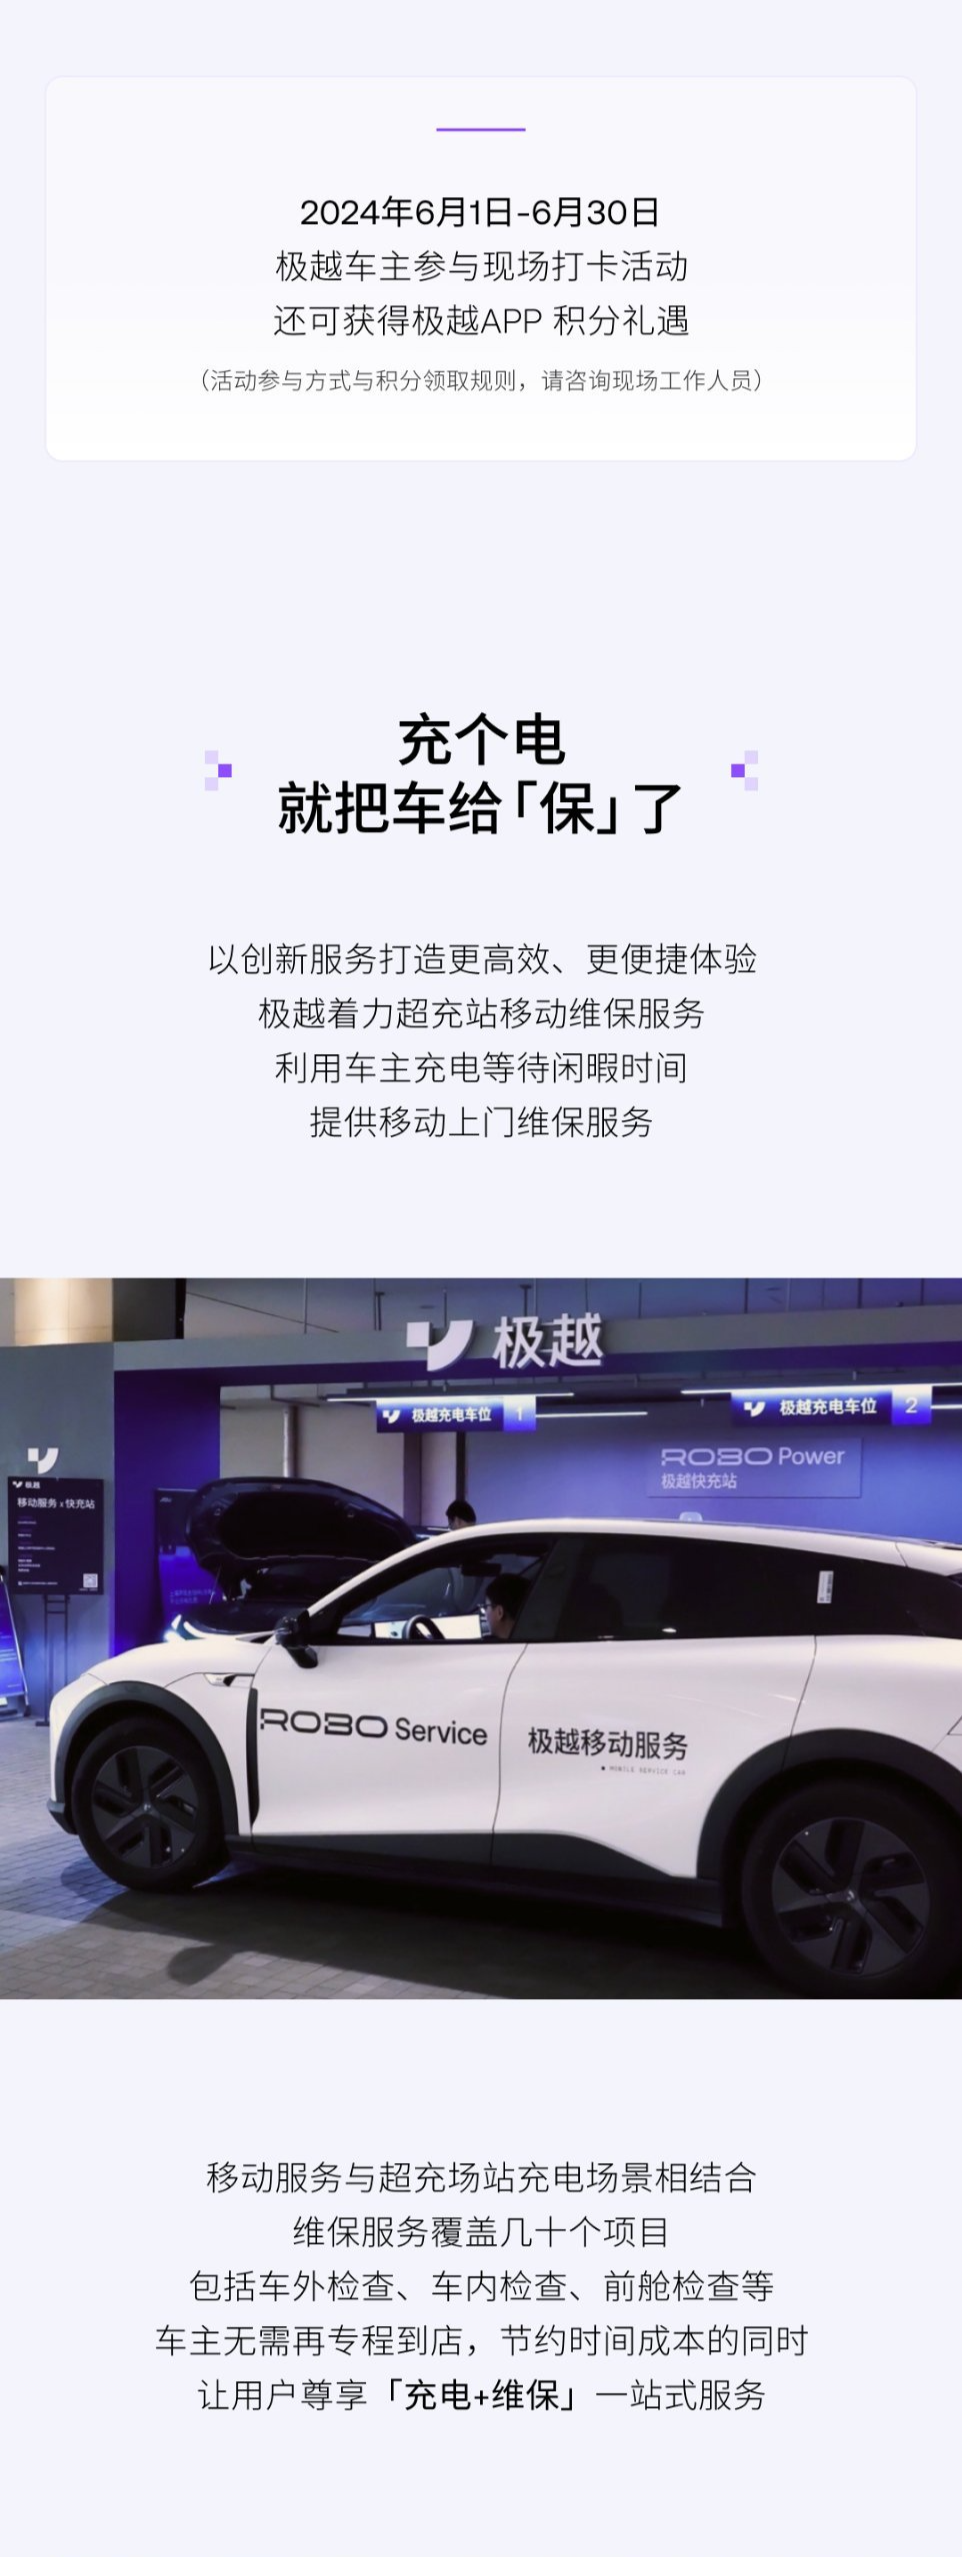 极越汽车首个尊享出行服务中心落地上海虹桥机场，提供“充电 + 维保”新模式售后